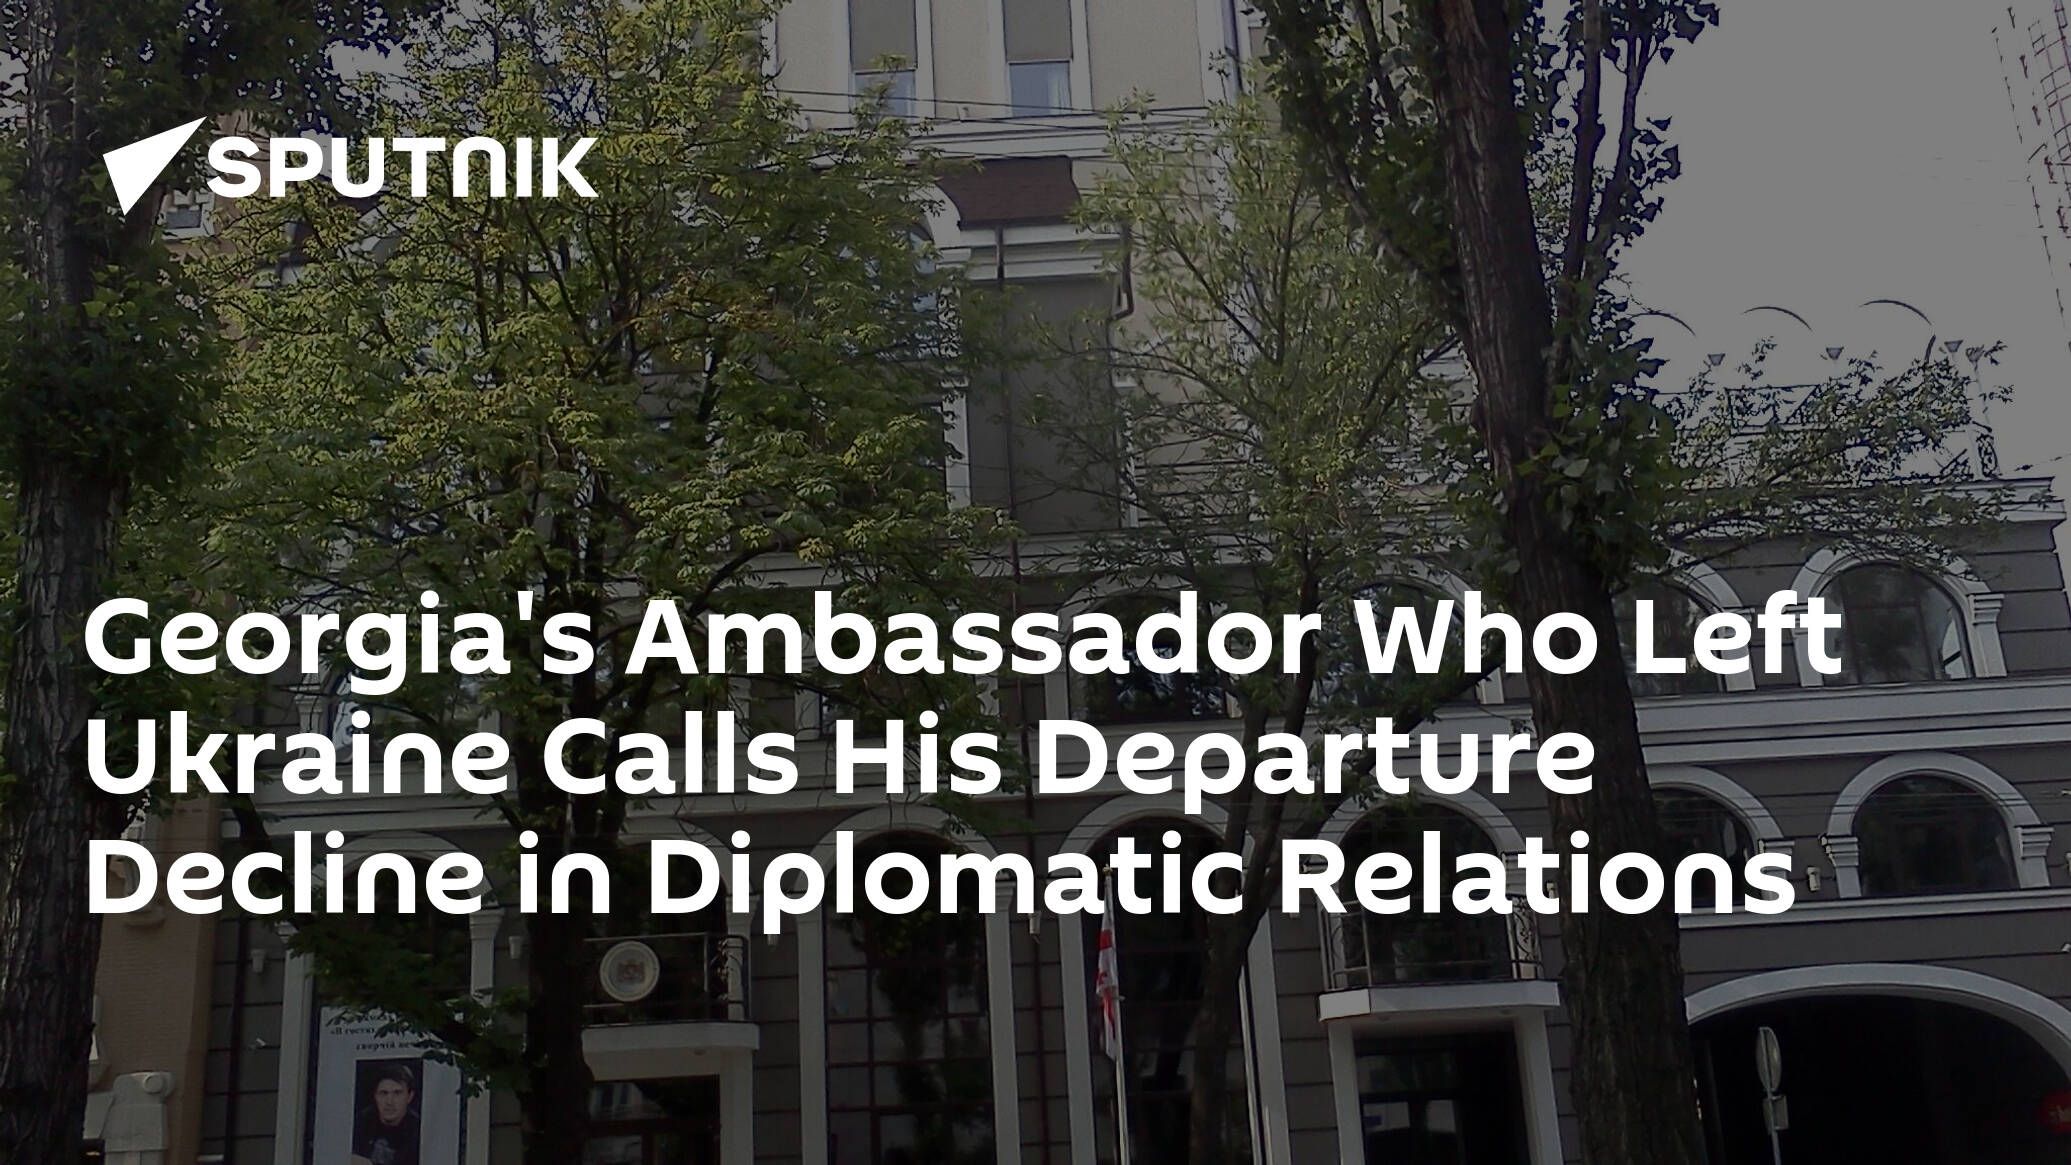 Georgia's Ambassador Who Left Ukraine Calls His Departure Decline in Diplomatic Relations